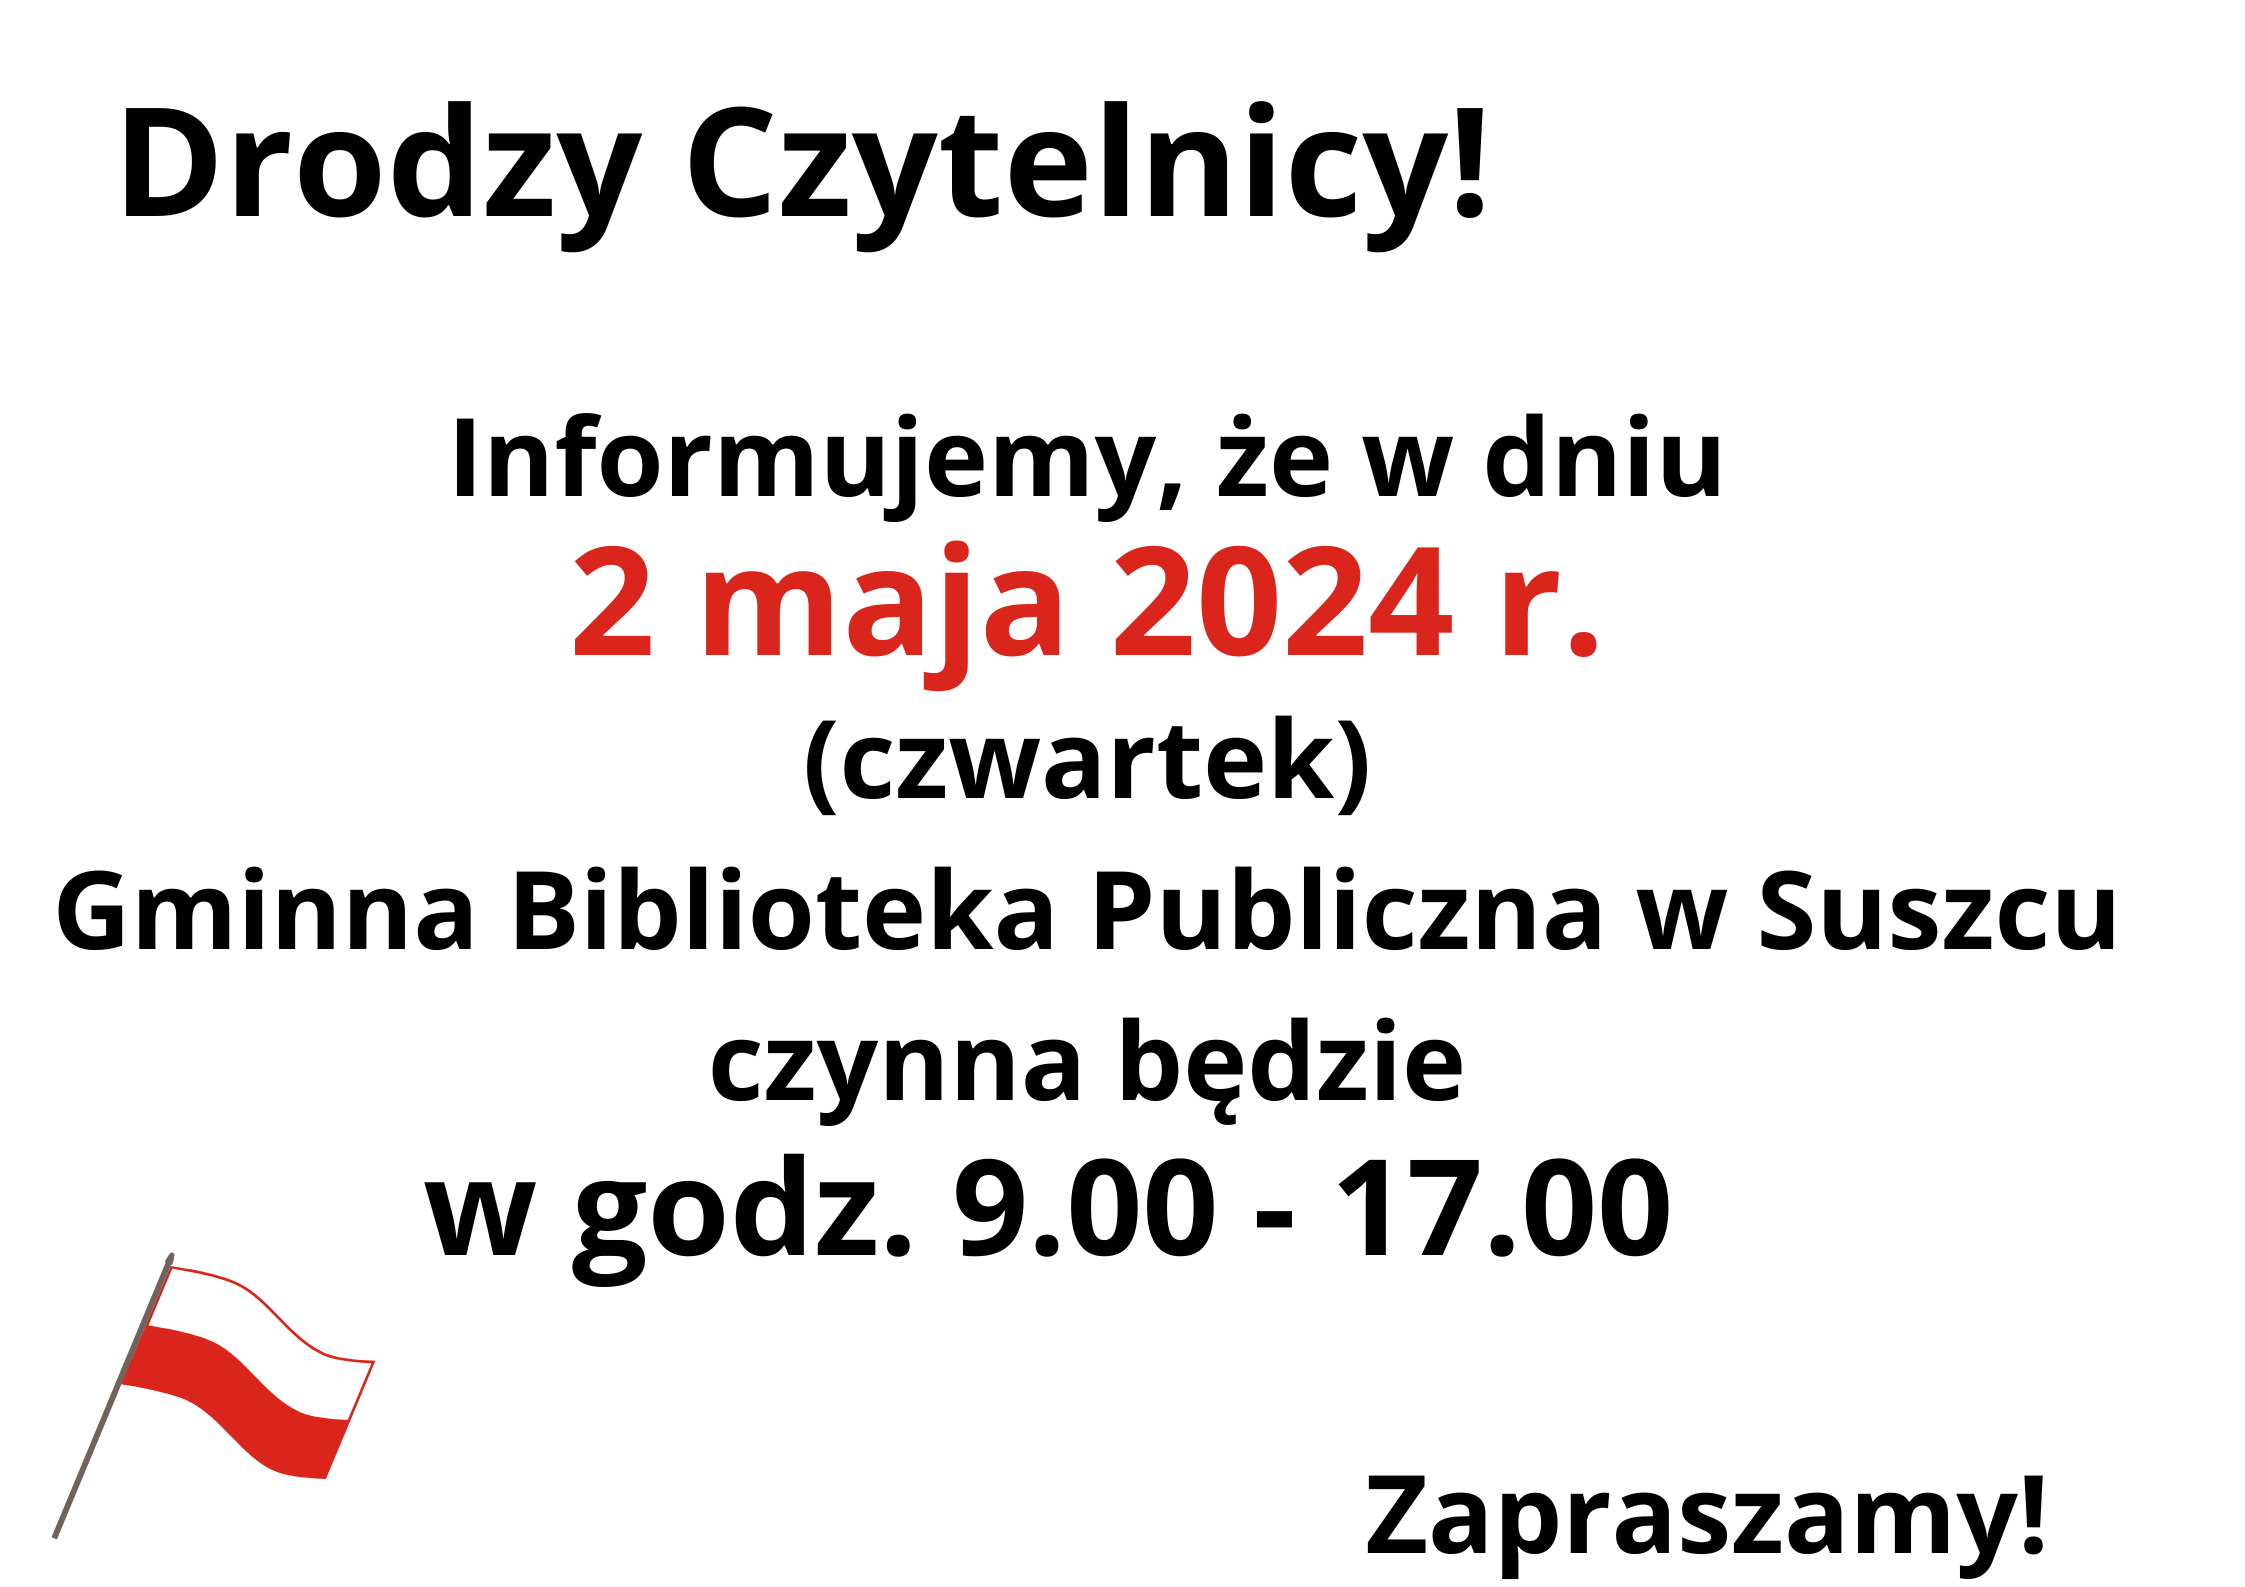 2 maja 2024 r. biblioteka czynna w godz. od 9.00-17.00